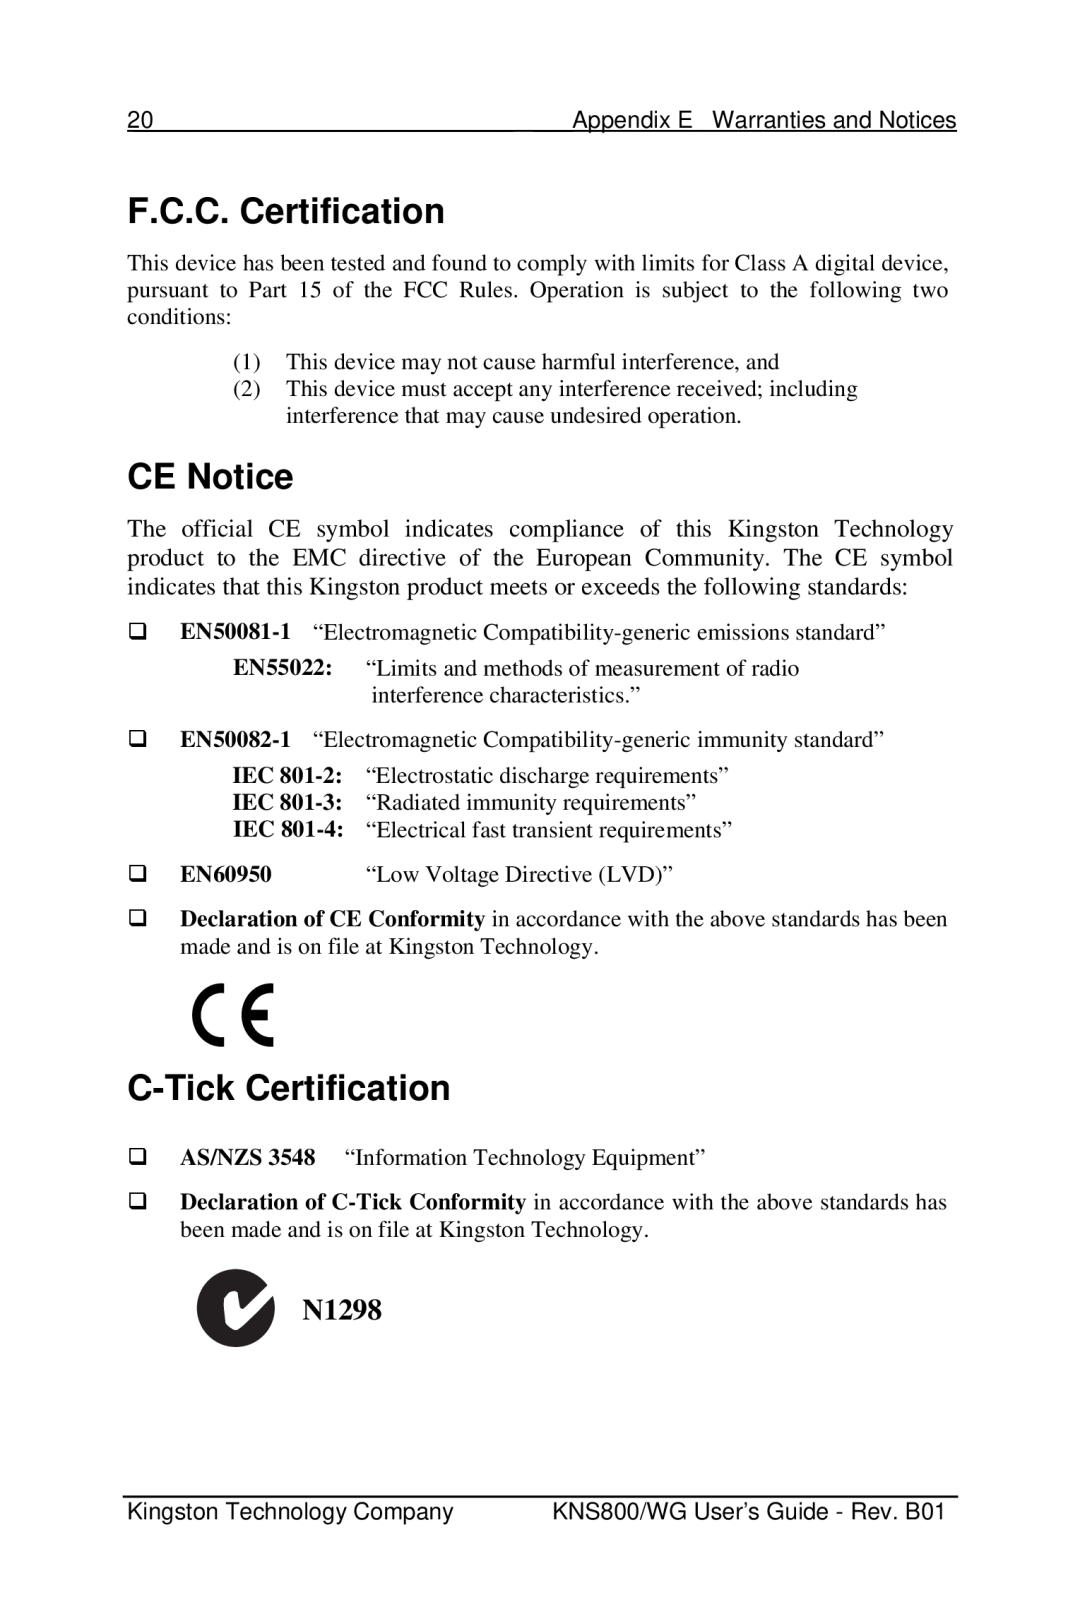 Kingston Technology KNS800/WG, KNS500/WG manual F.C.C. Certification, CE Notice, C-Tick Certification, N1298, ‰ EN60950 